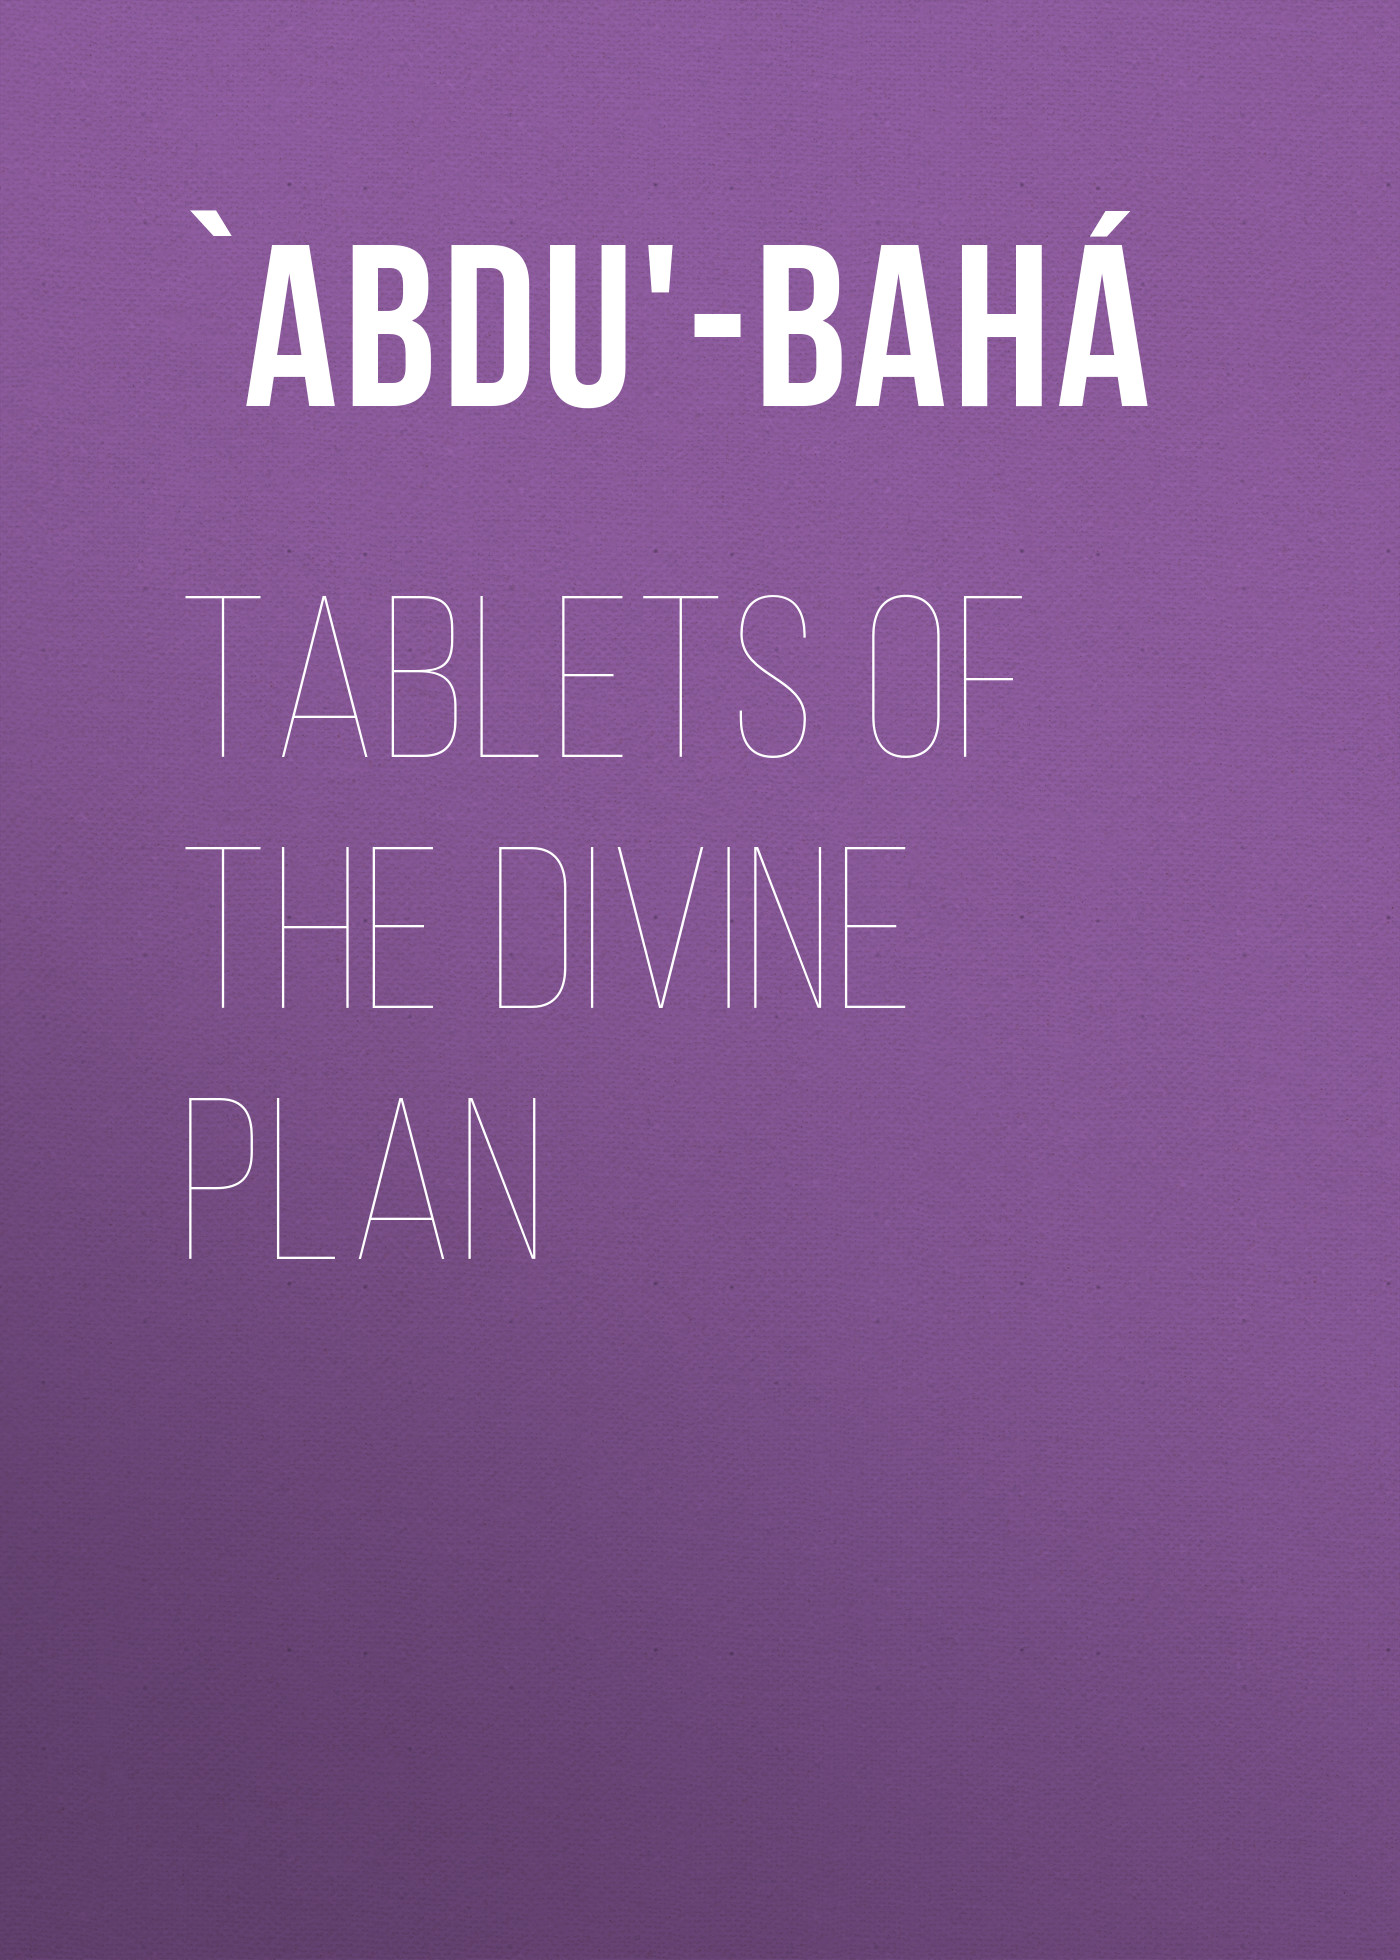 Книга Tablets of the Divine Plan из серии , созданная  `Abdu'-Bahá, может относится к жанру Зарубежная классика, Зарубежная эзотерическая и религиозная литература, Философия, Зарубежная психология, Зарубежное фэнтези. Стоимость электронной книги Tablets of the Divine Plan с идентификатором 36366806 составляет 0 руб.